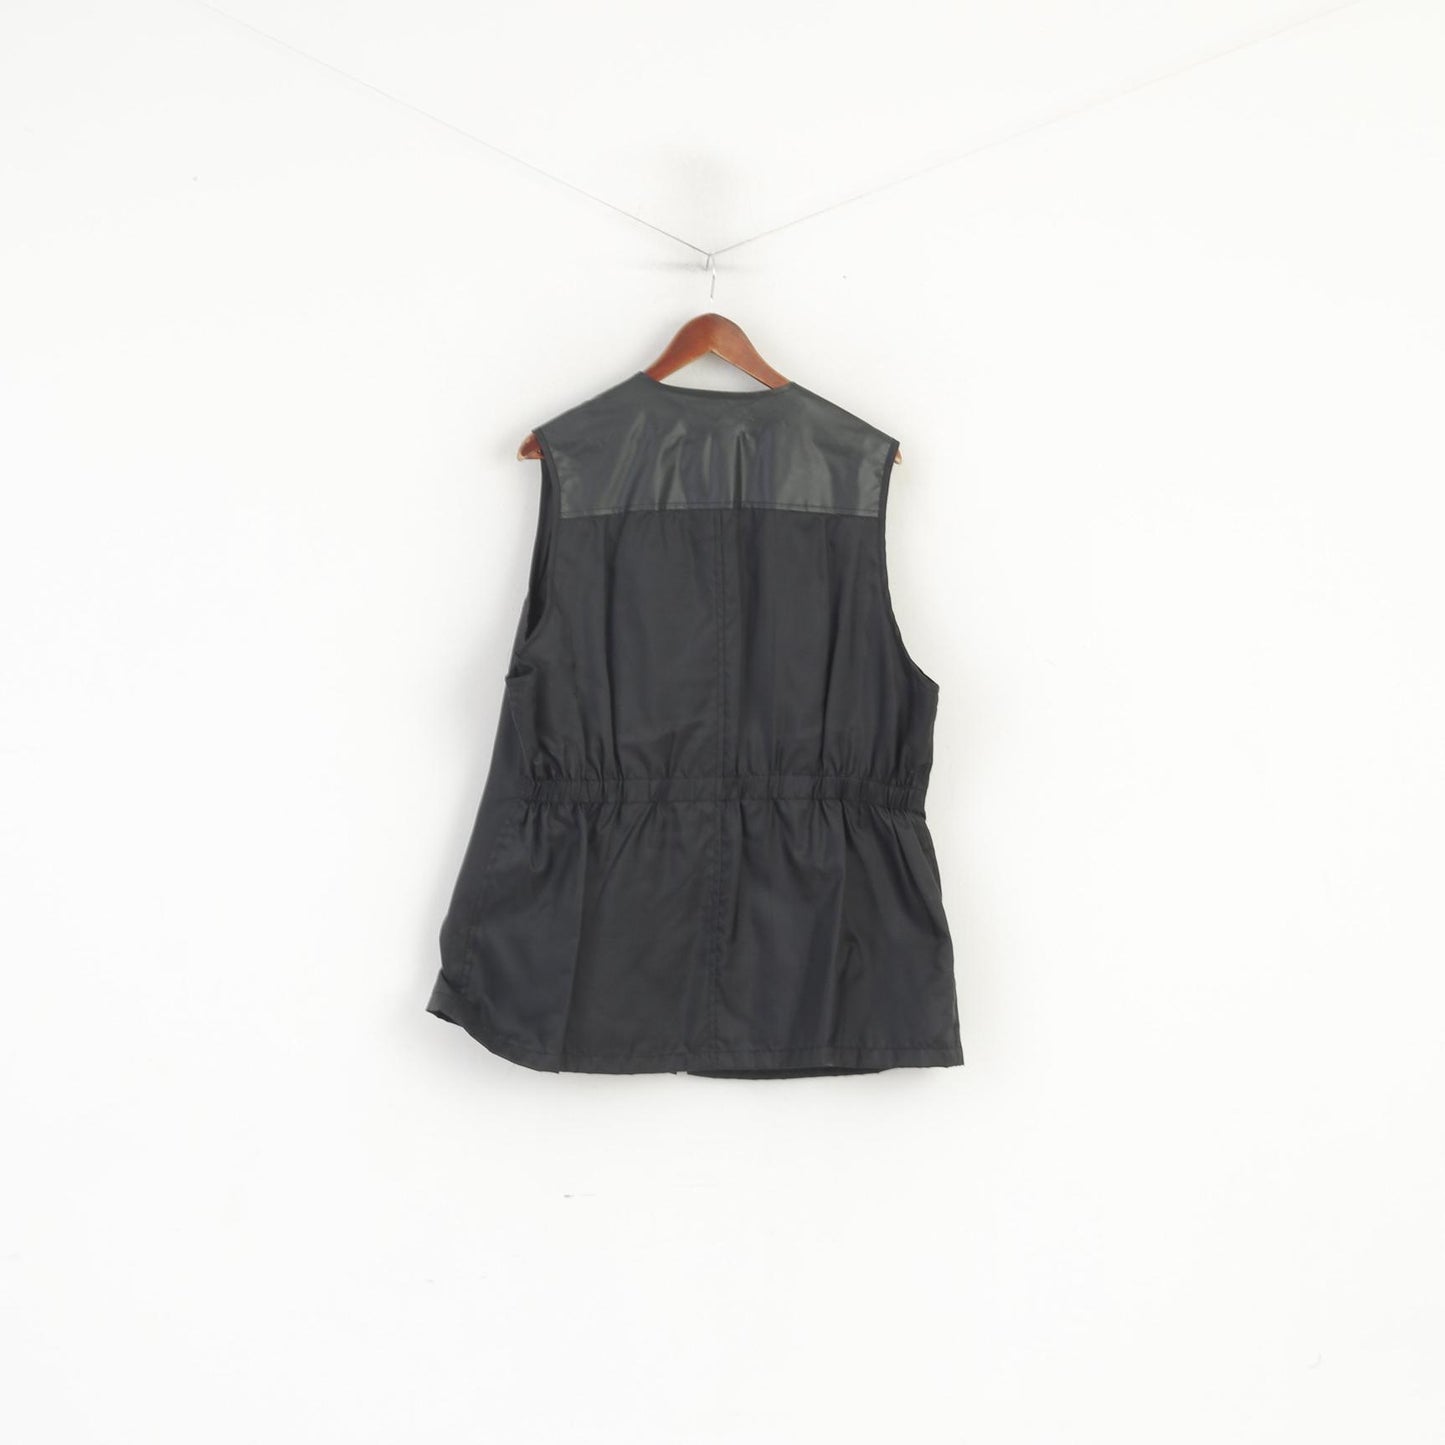 John F. Gee Jeanswear Men 52 XL Waistcoast Black Nylon Waterproof Sleeveless Vest